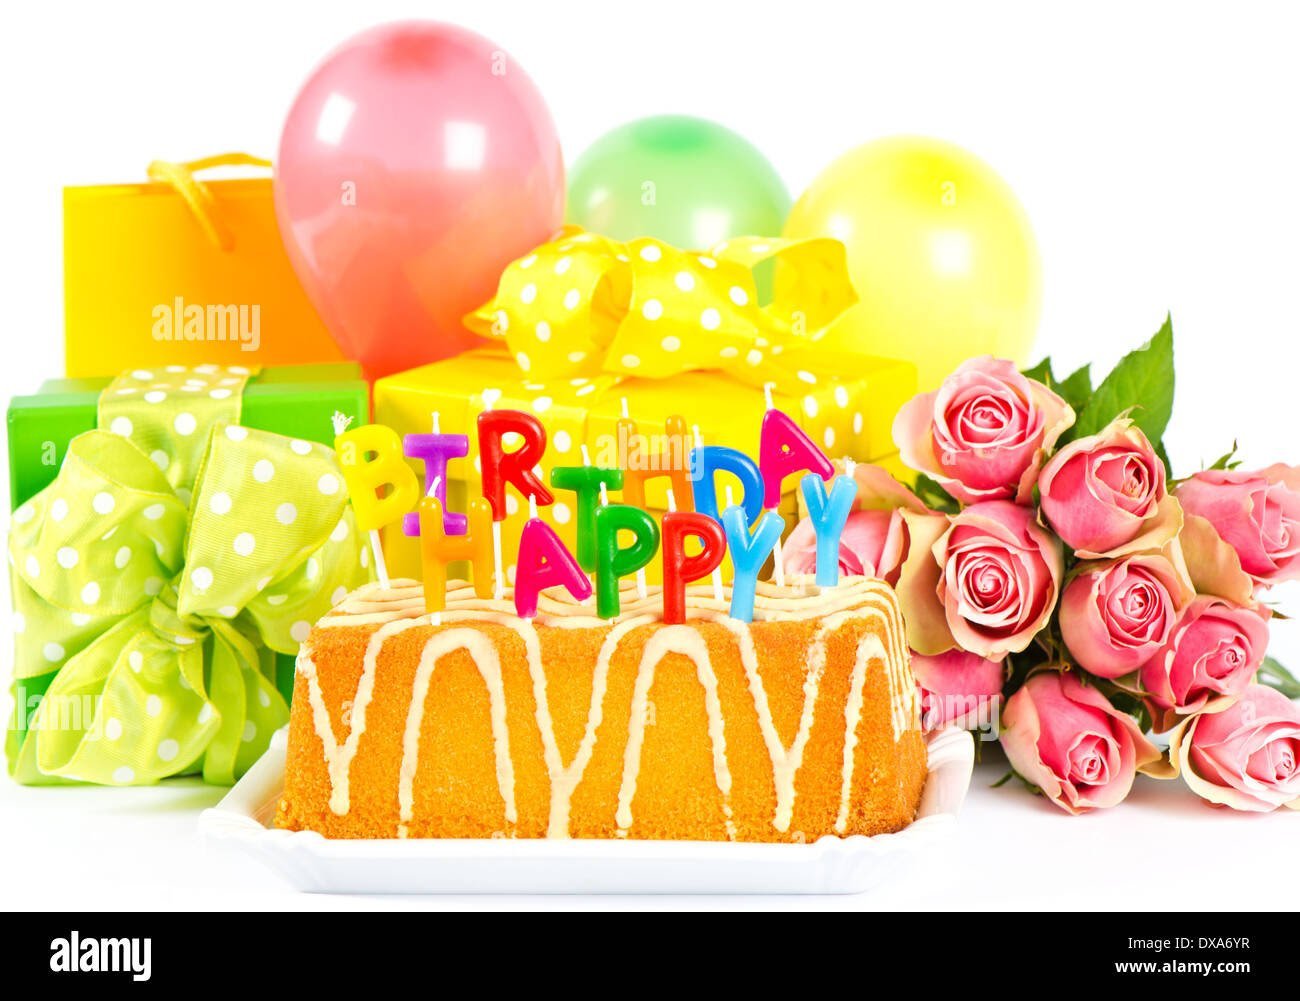 С днем рождения с тортом и шарами. Открытка с днём рождения торт. Торт шарики цветы. Красивые шары на день рождения. Торт подарок на день рождения.